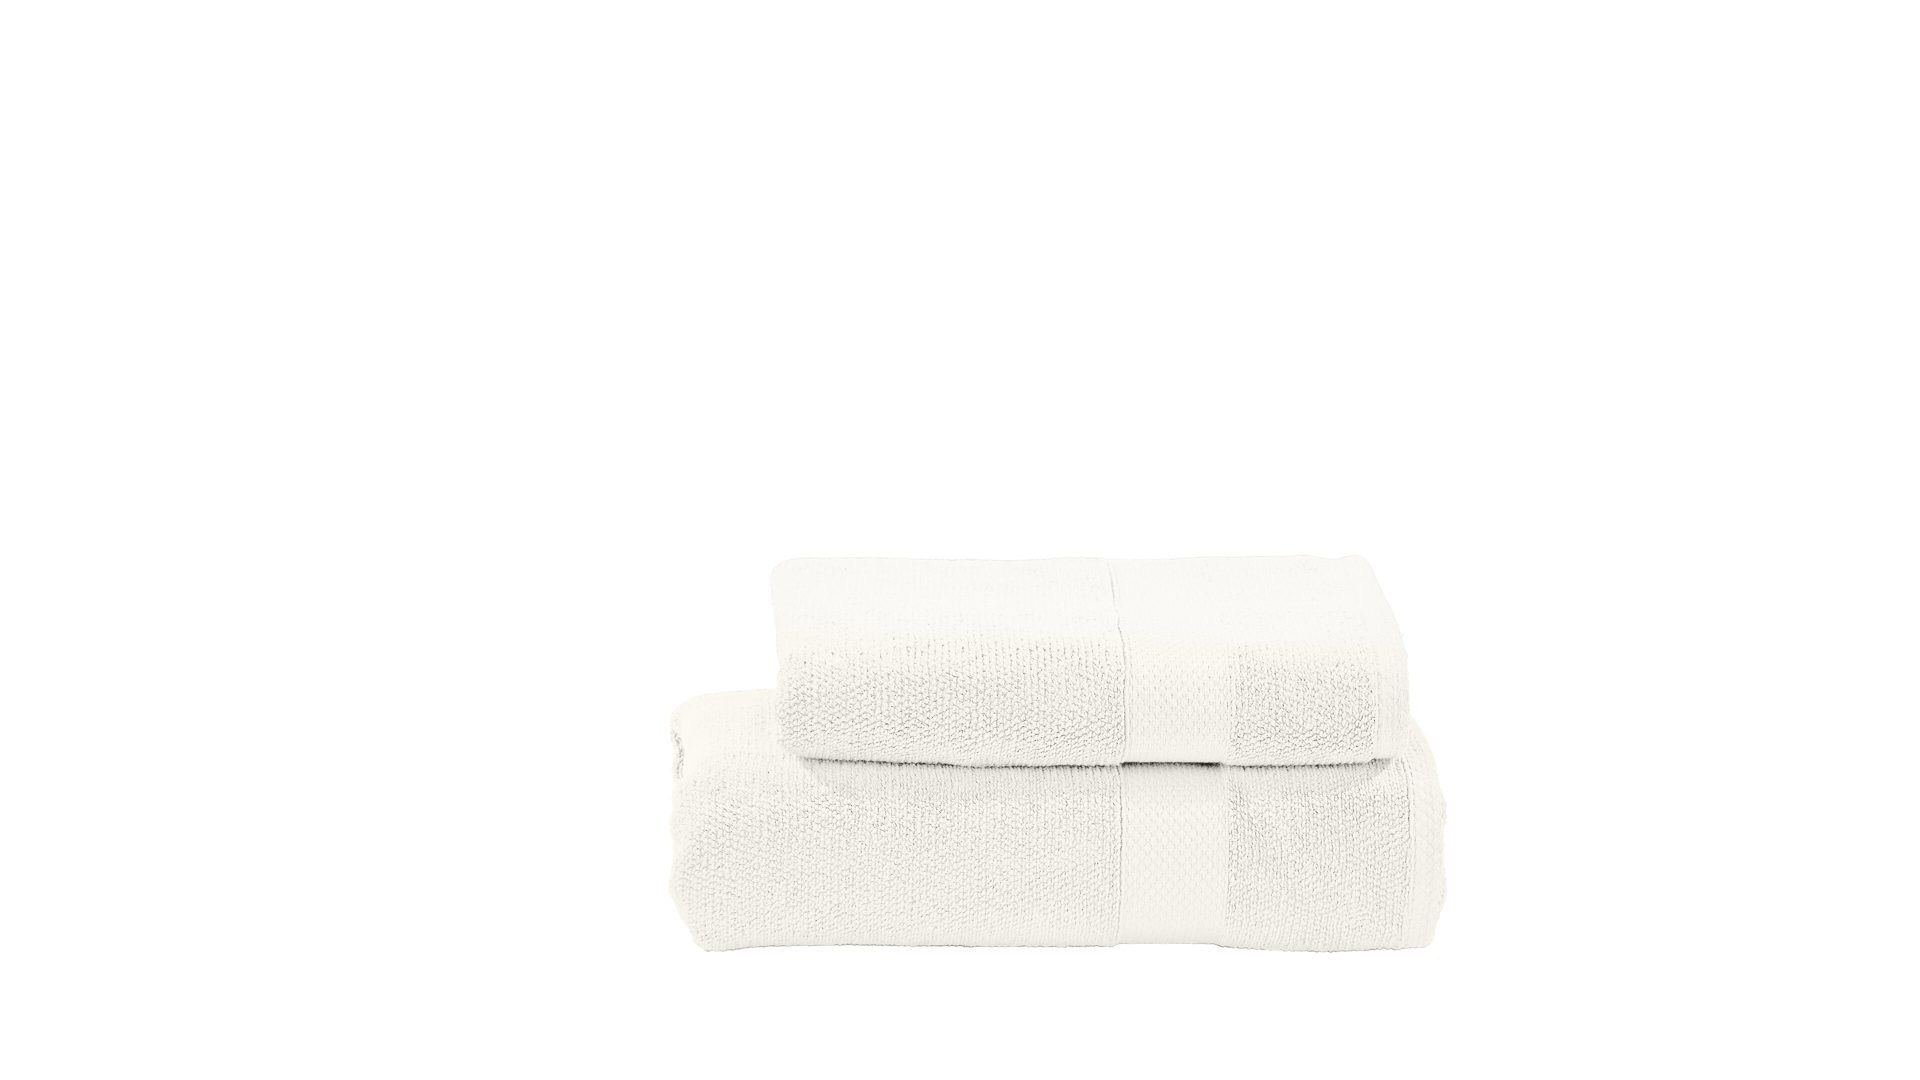 Handtuch-Set Done by karabel home company aus Stoff in Weiß done Handtuch-Set Deluxe für Ihre Heimtextilien weiße Baumwolle – zweiteilig